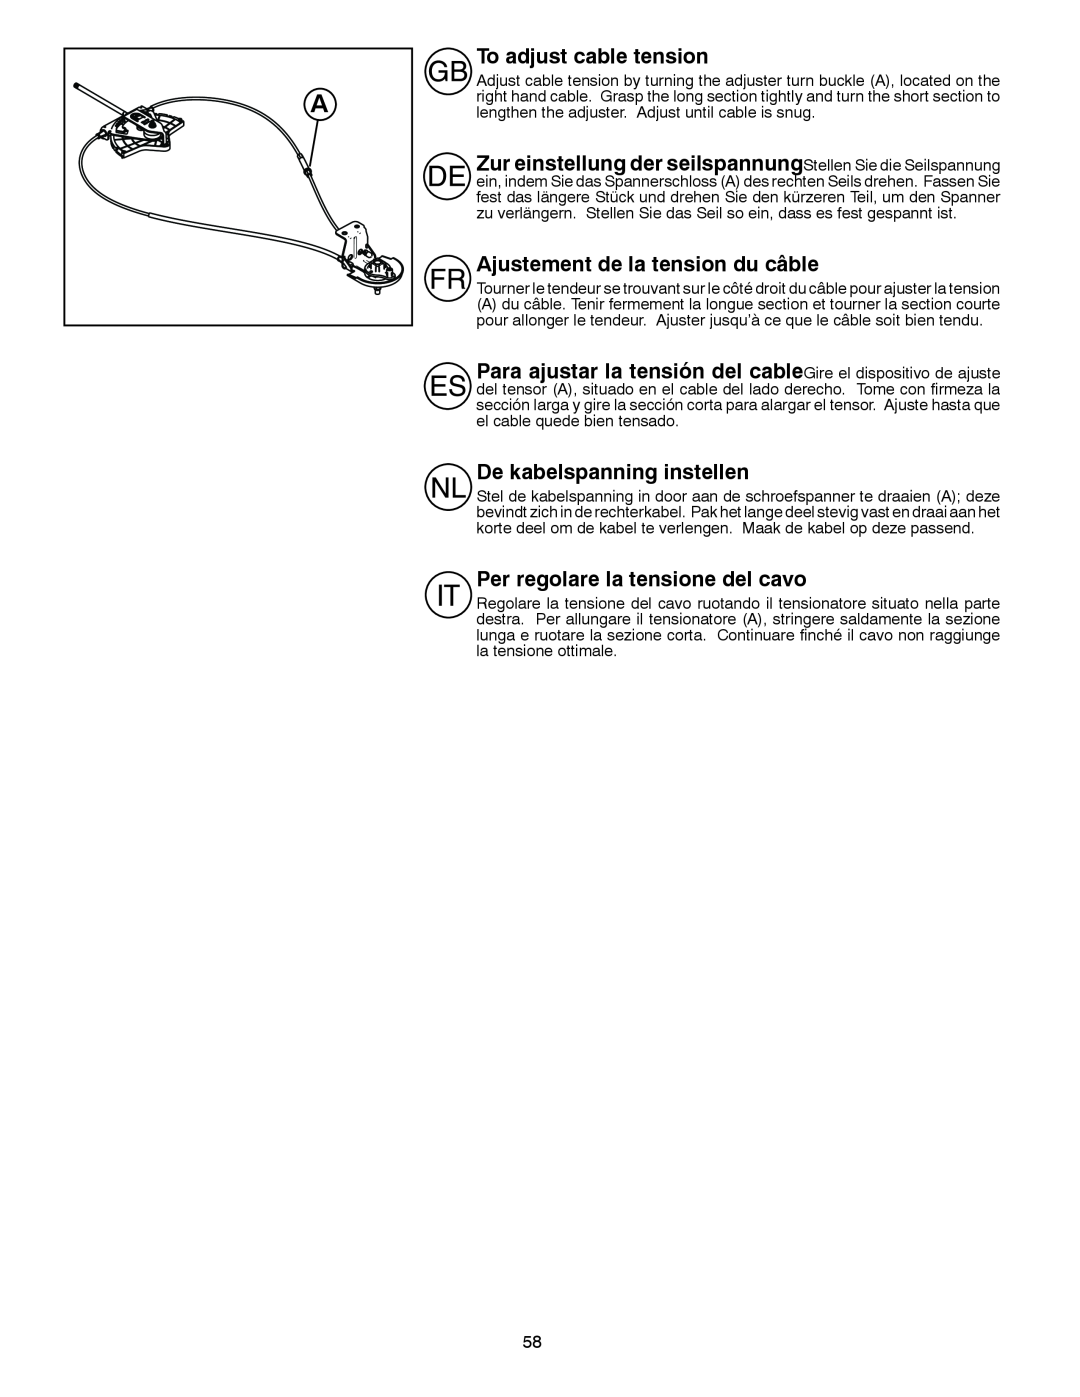 Husqvarna ST 276EP instruction manual To adjust cable tension, Zur einstellung der seilspannungStellen Sie die Seilspannung 